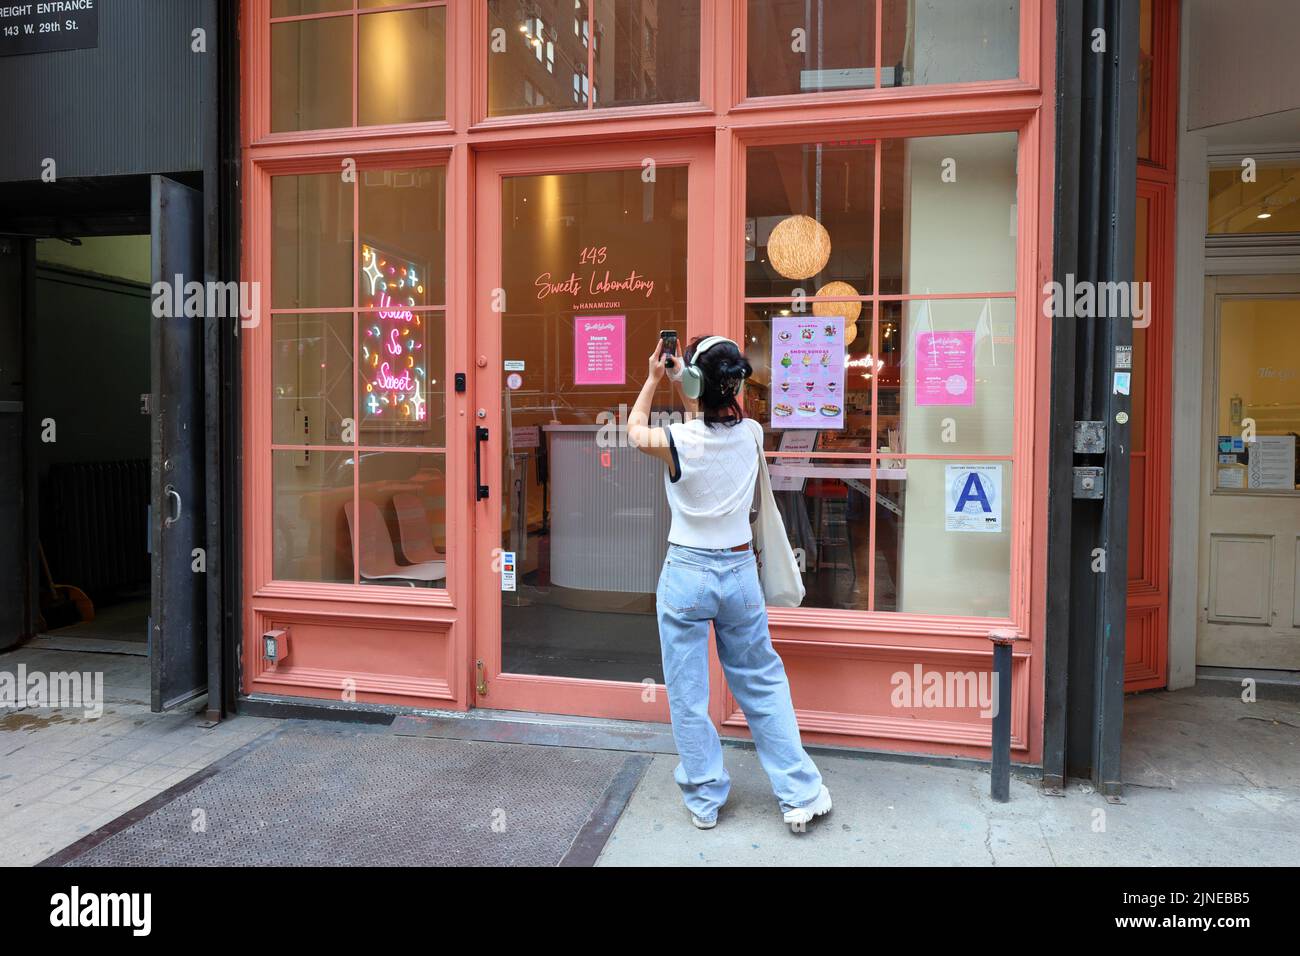 Sweets Laboratory par Hanamizuki, 143 W 29th St, New York, NY. Façade extérieure d'un bar à desserts japonais dans le quartier Chelsea de Manhattan. Banque D'Images